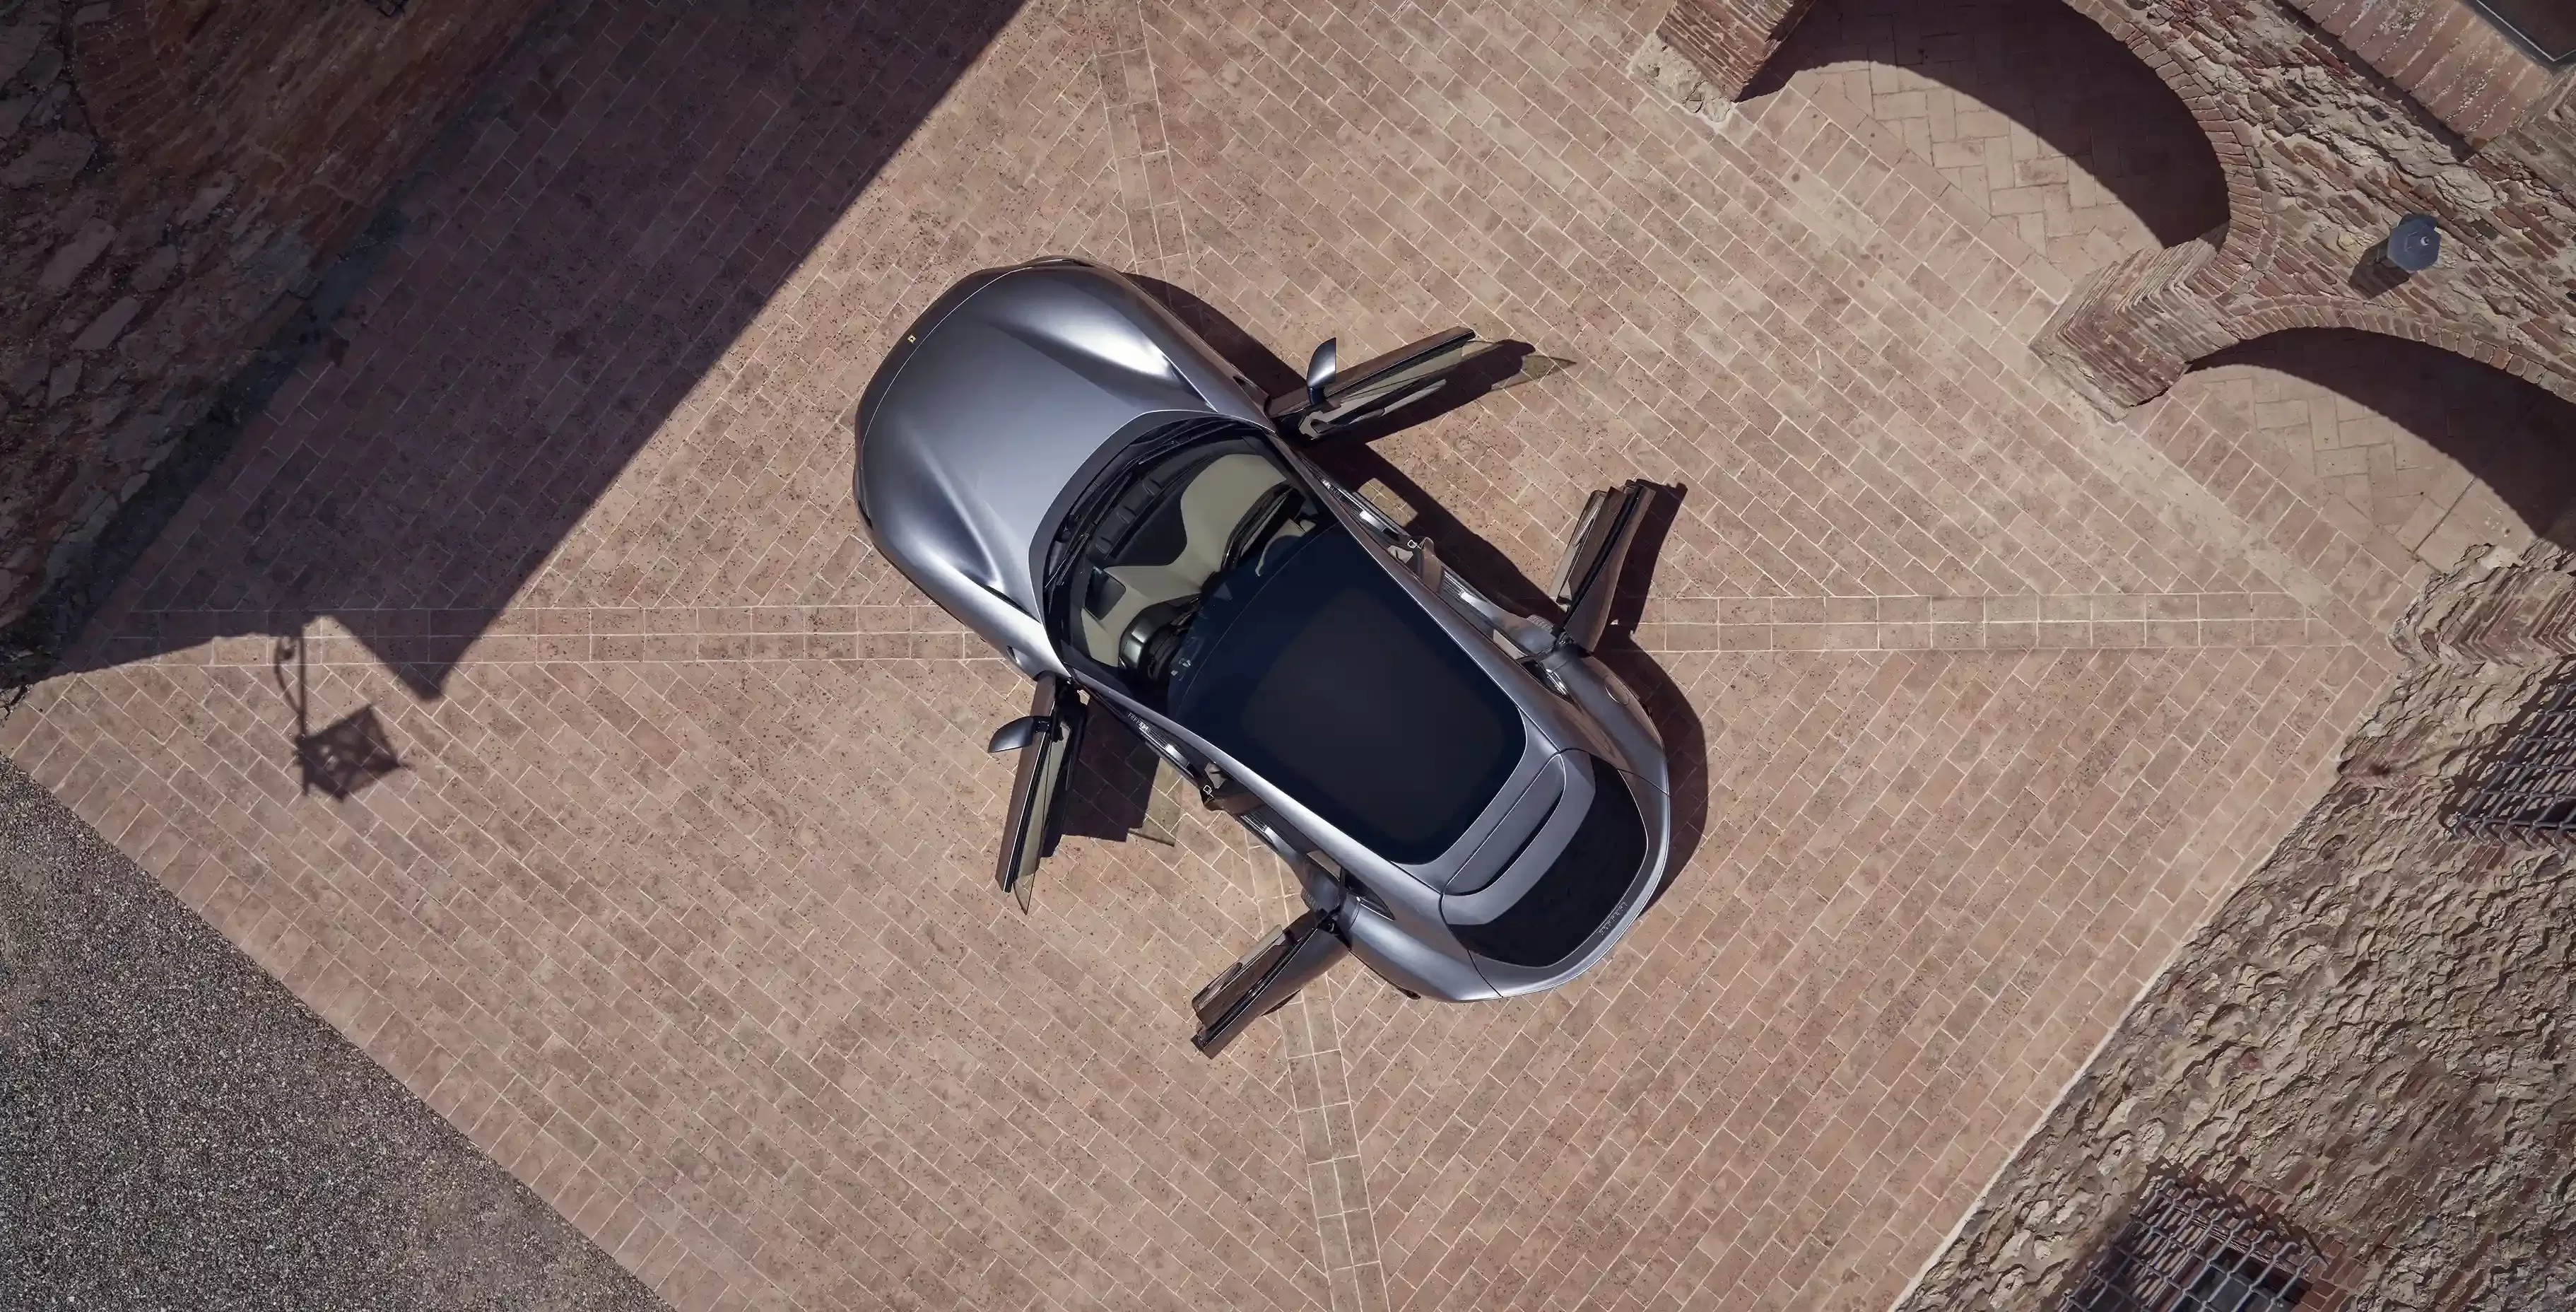 Birds eye view of luxury SUV with doors open